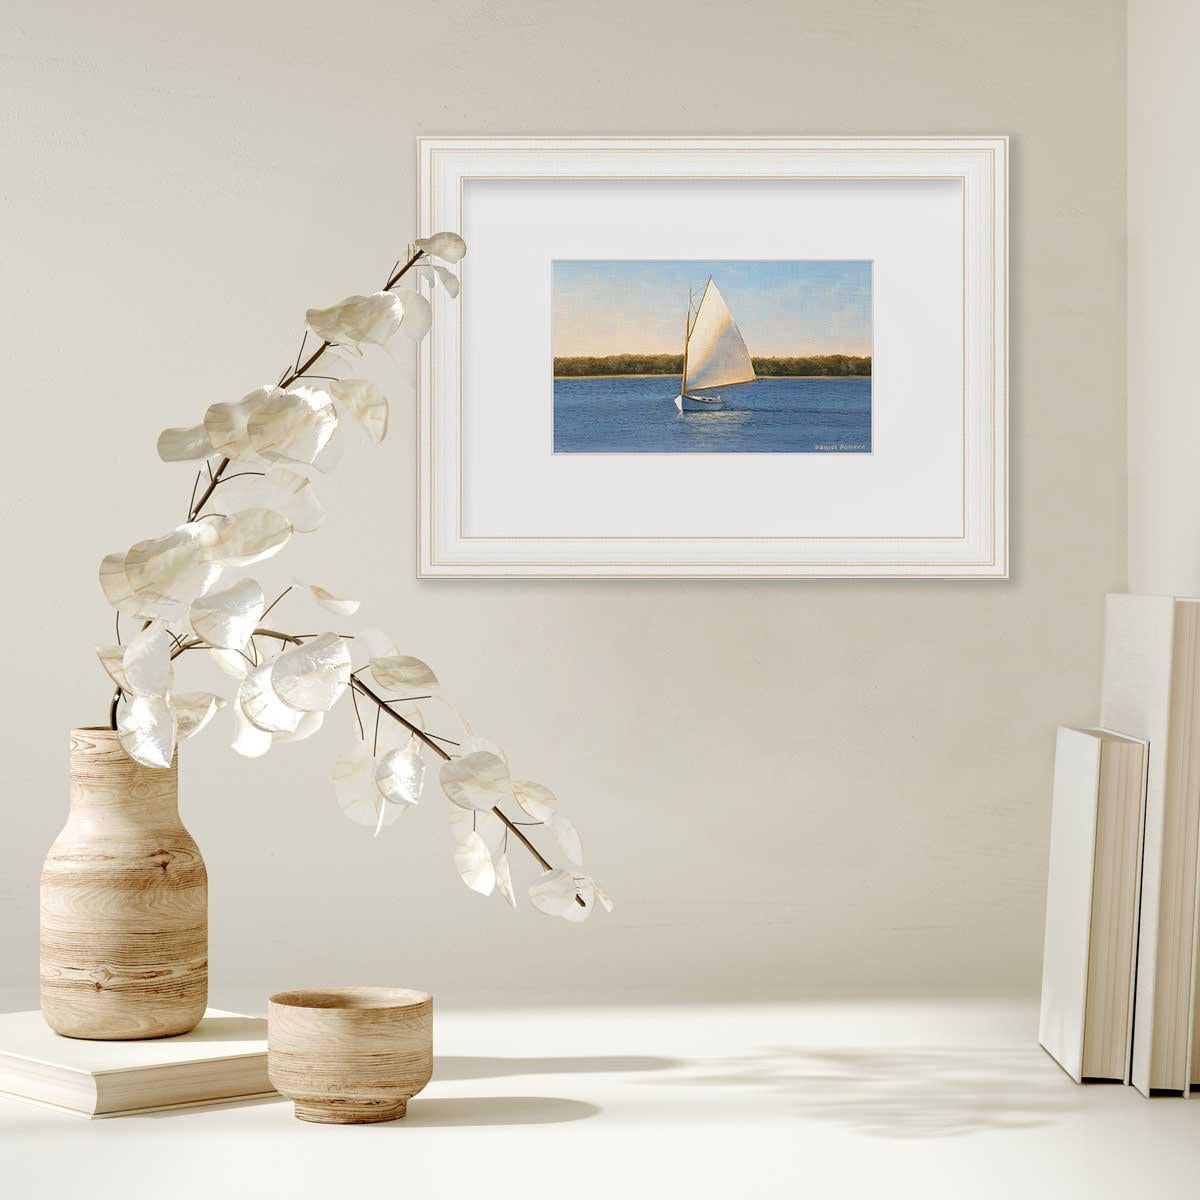 sailboat pictures framed